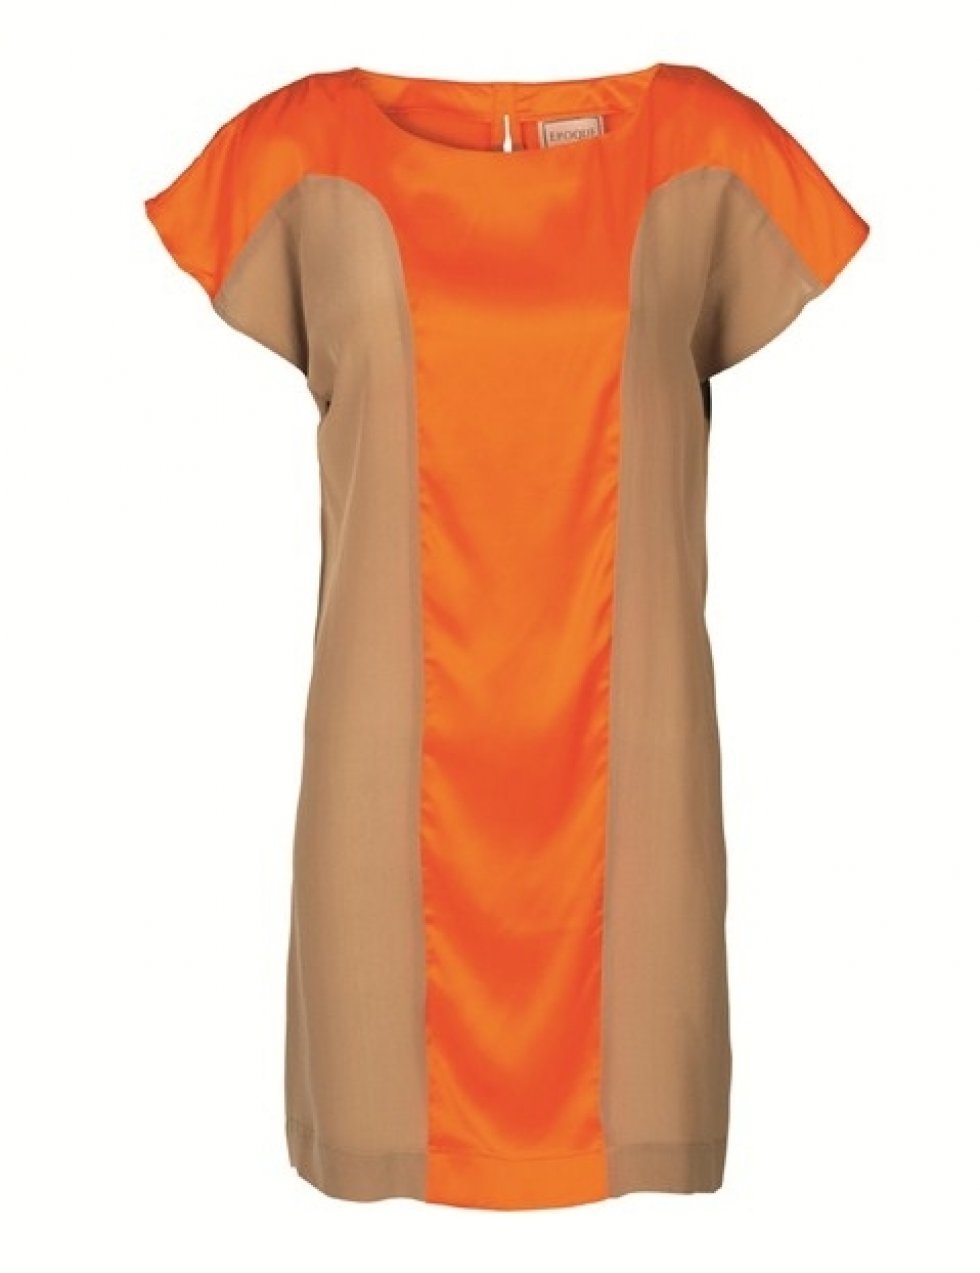 Kombiner gerne årets farver med mere nedtonede kulører som på denne kjole fra EPOQUE. - Trend 2013: Orange og gul